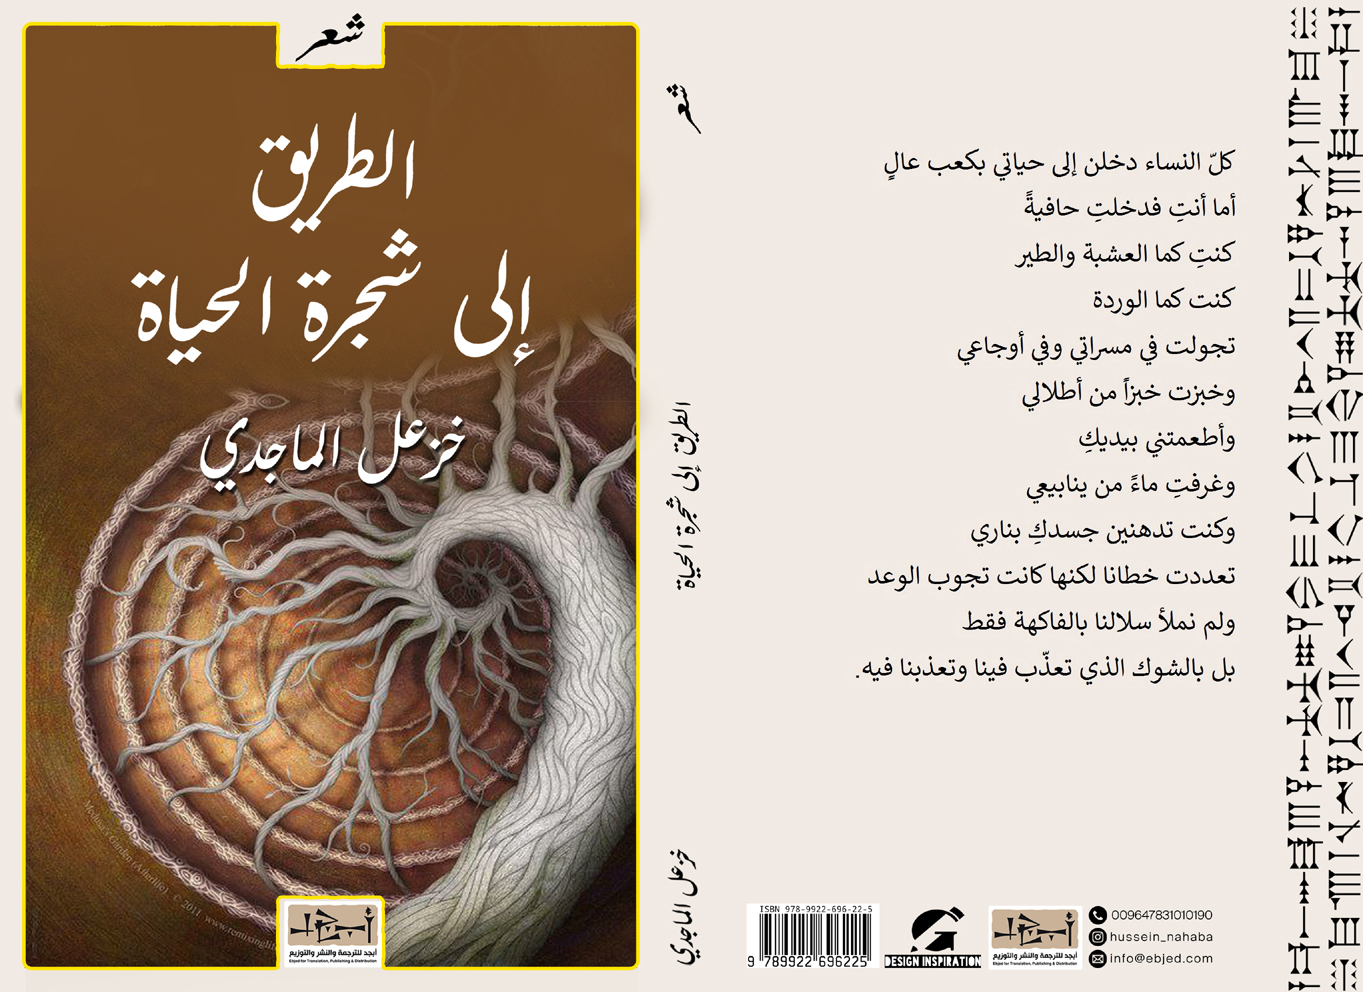  ديوان الطريق الى شجرة الحياة  تأليف: د. خزعل الماجدي